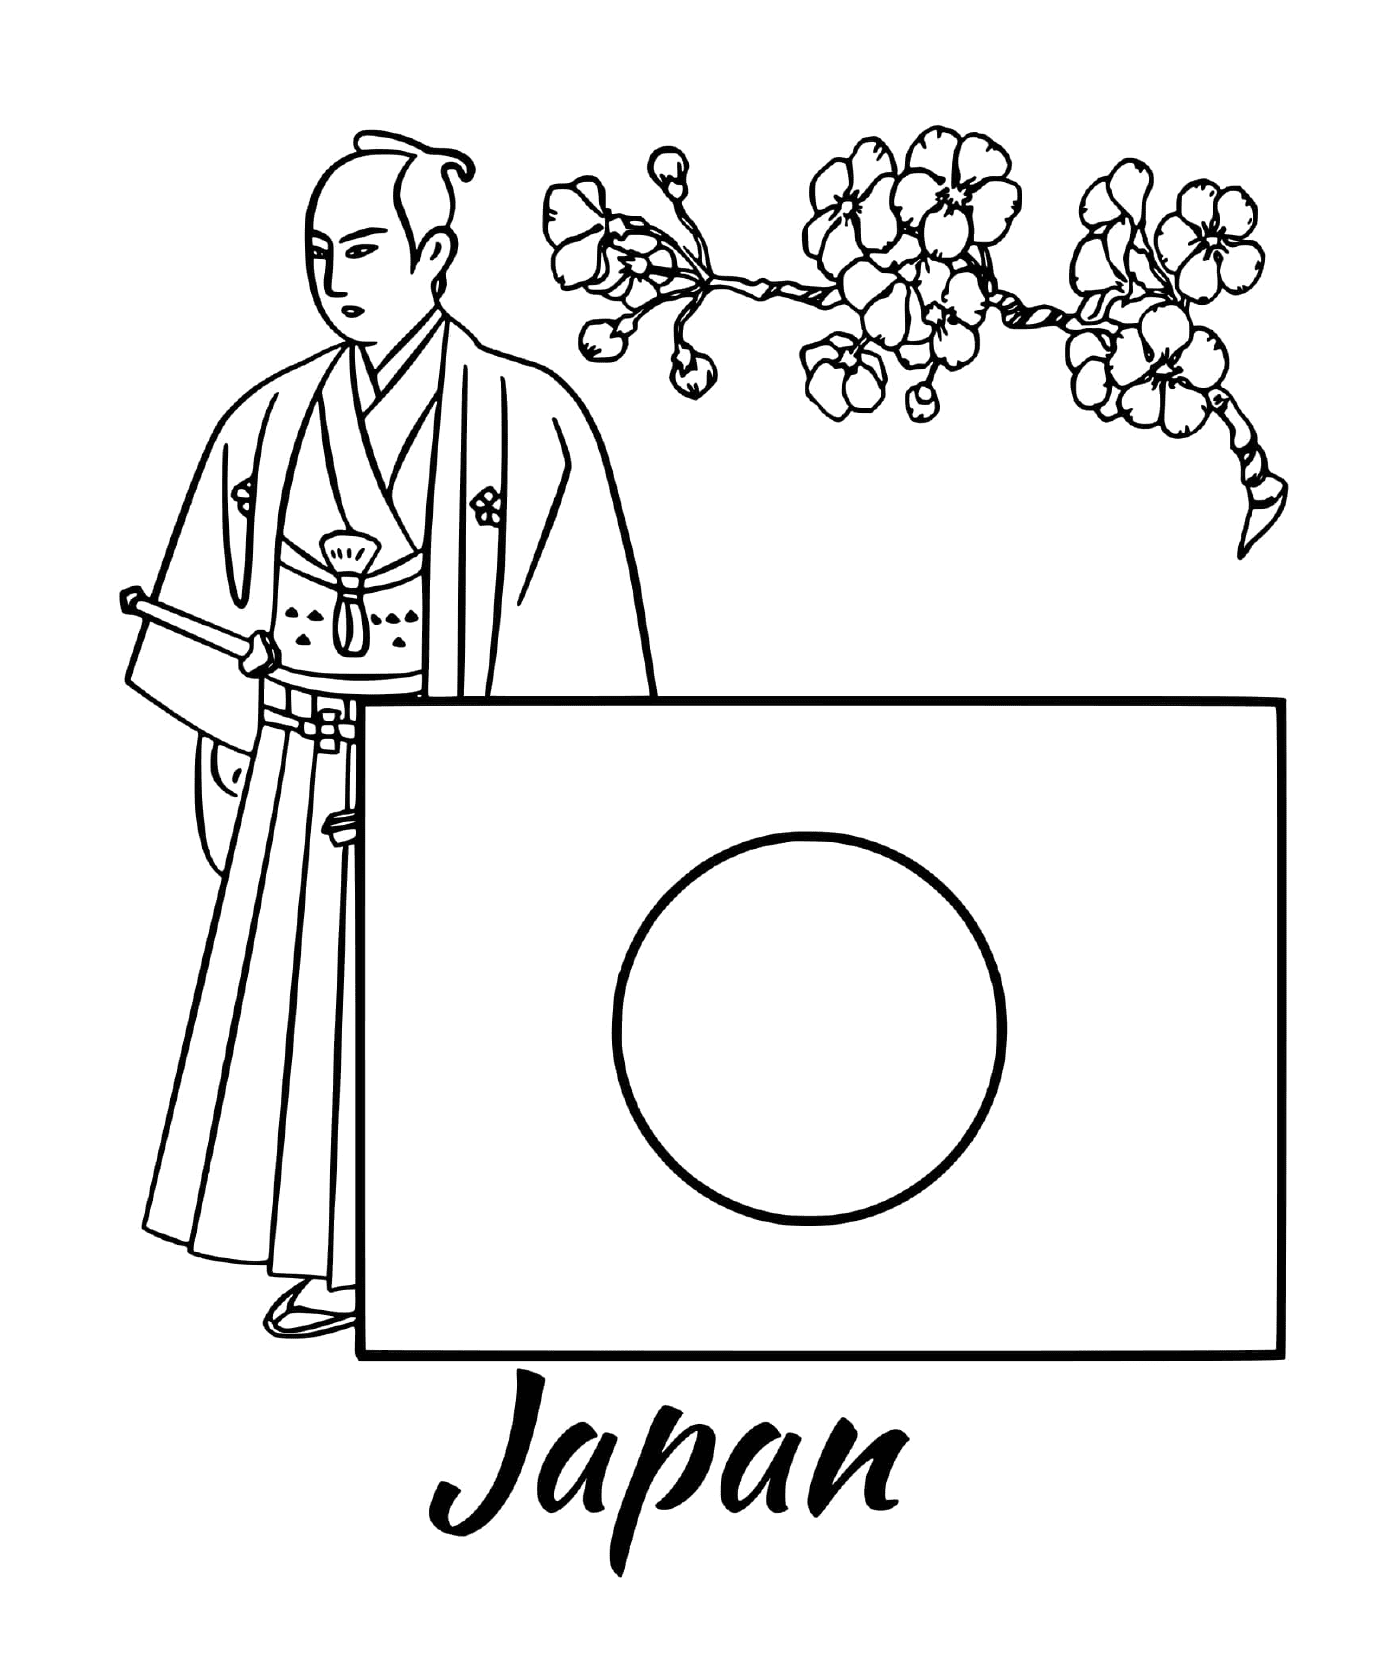  Bandiera del Giappone con un samurai 